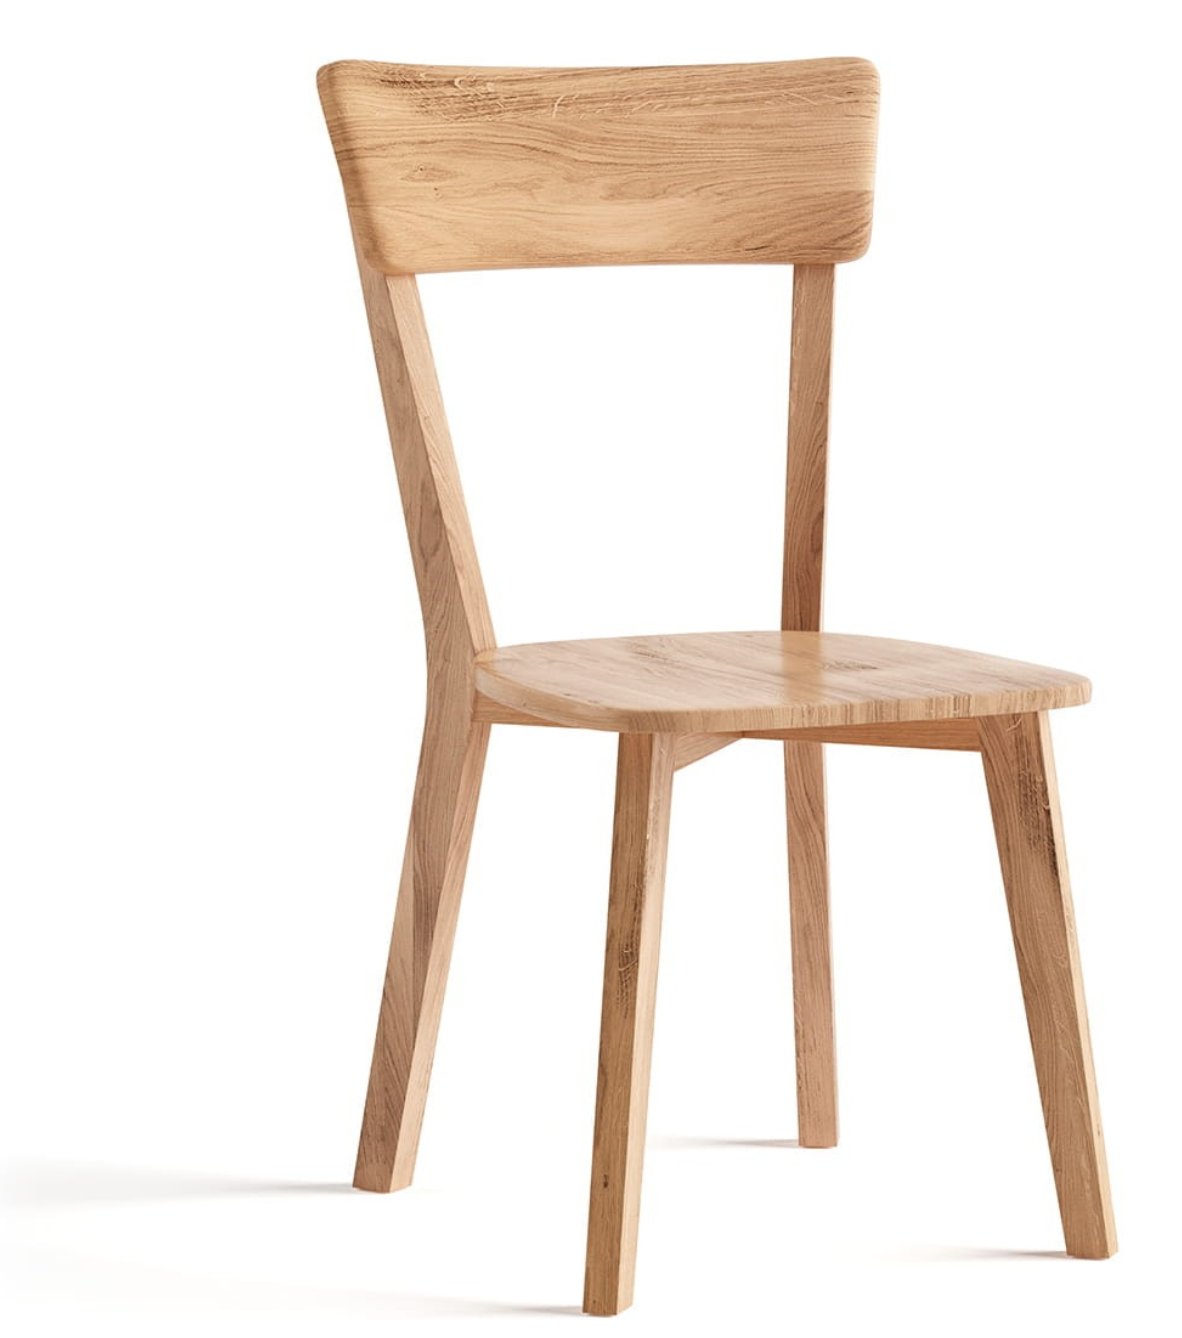 Dubová židle 03, masiv